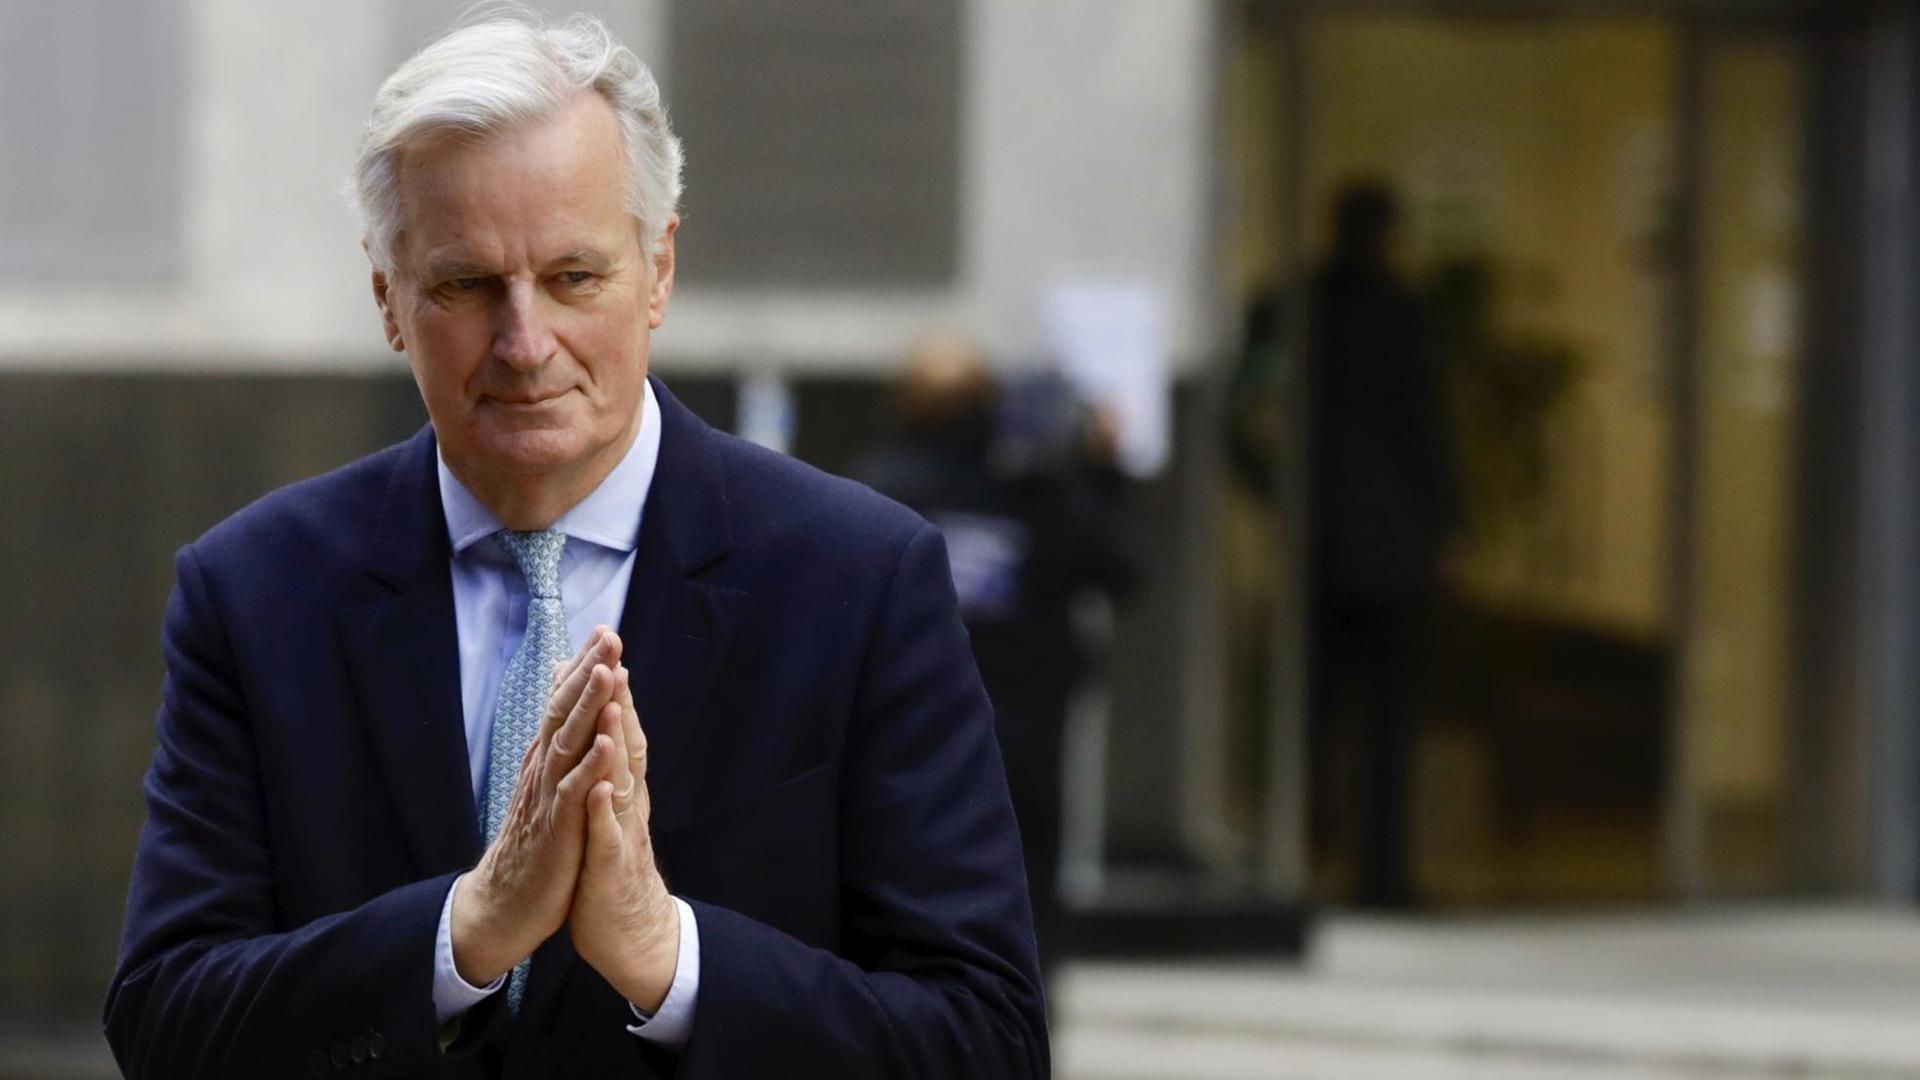 Barnier steht vor einem Eingang und hält die Hände wie beim Beten zusammen.